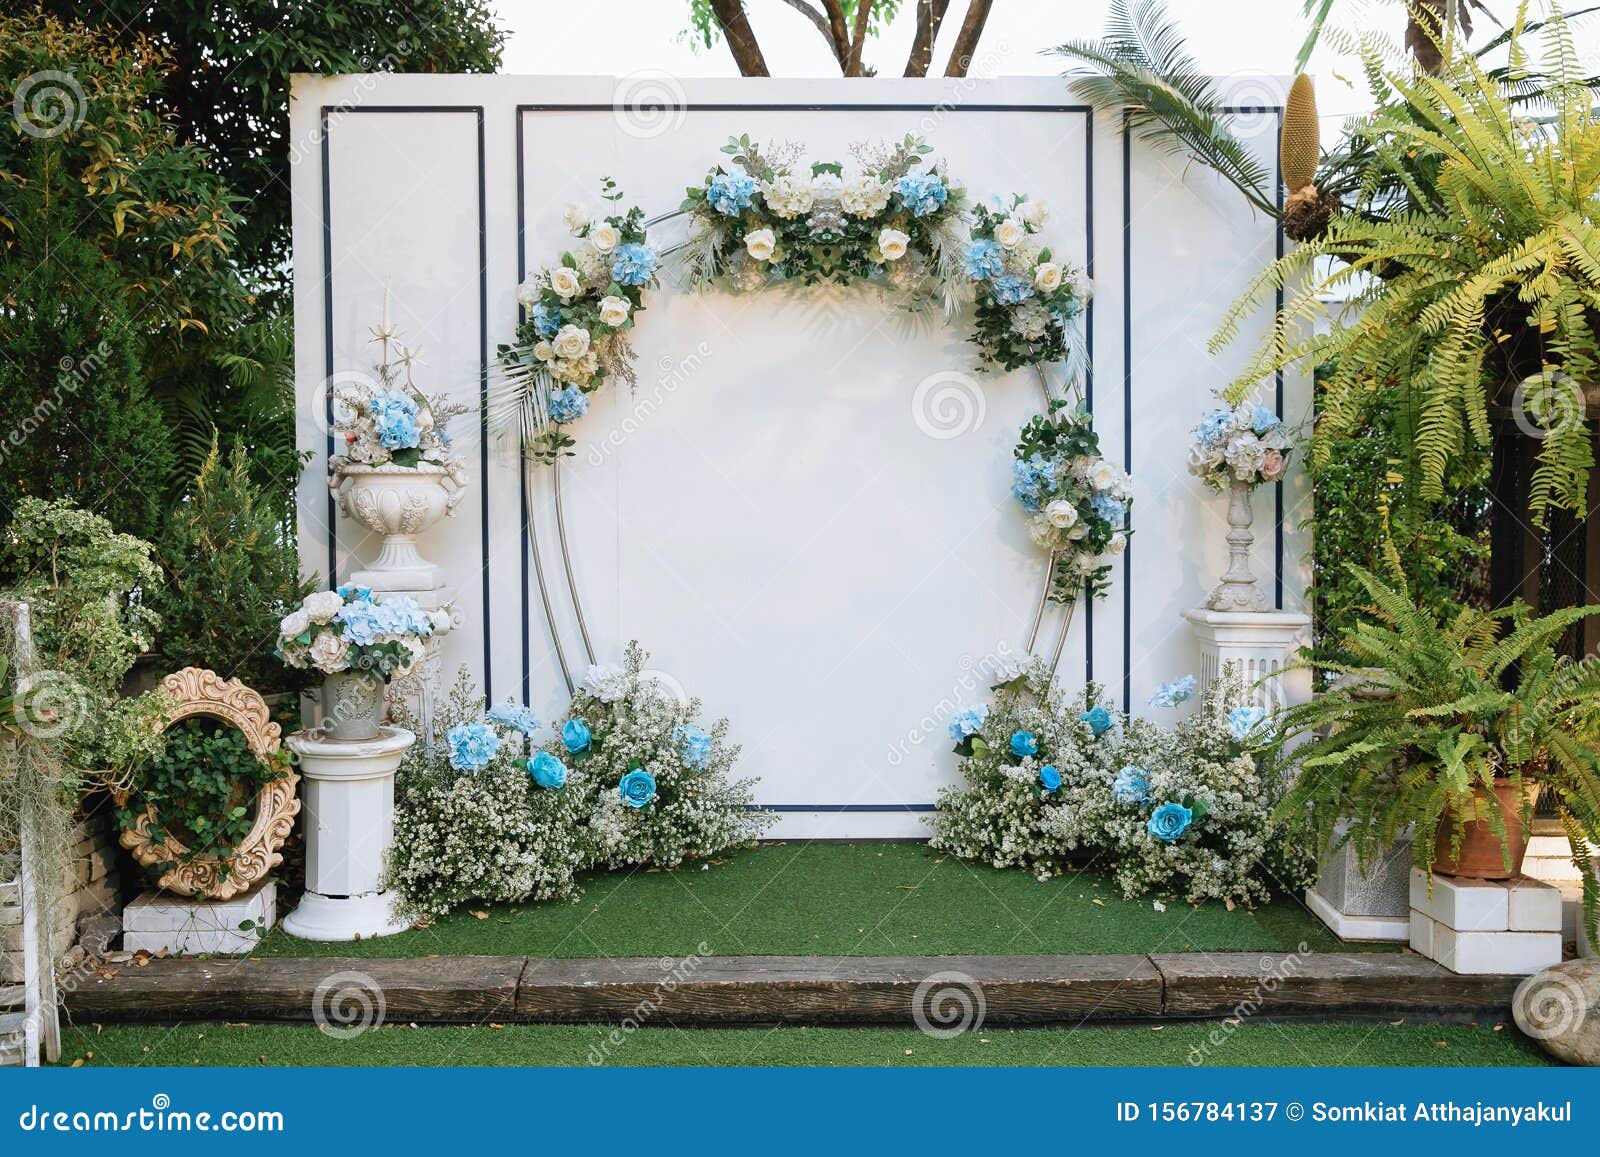 Khung cảnh đám cưới - Khung cảnh đám cưới là những điểm nhấn đặc biệt trong lễ cưới của bạn. Hãy xem hình ảnh để biết cách sử dụng khung cảnh đám cưới để tạo nên không gian hoàn hảo và ấn tượng cho người tham dự.